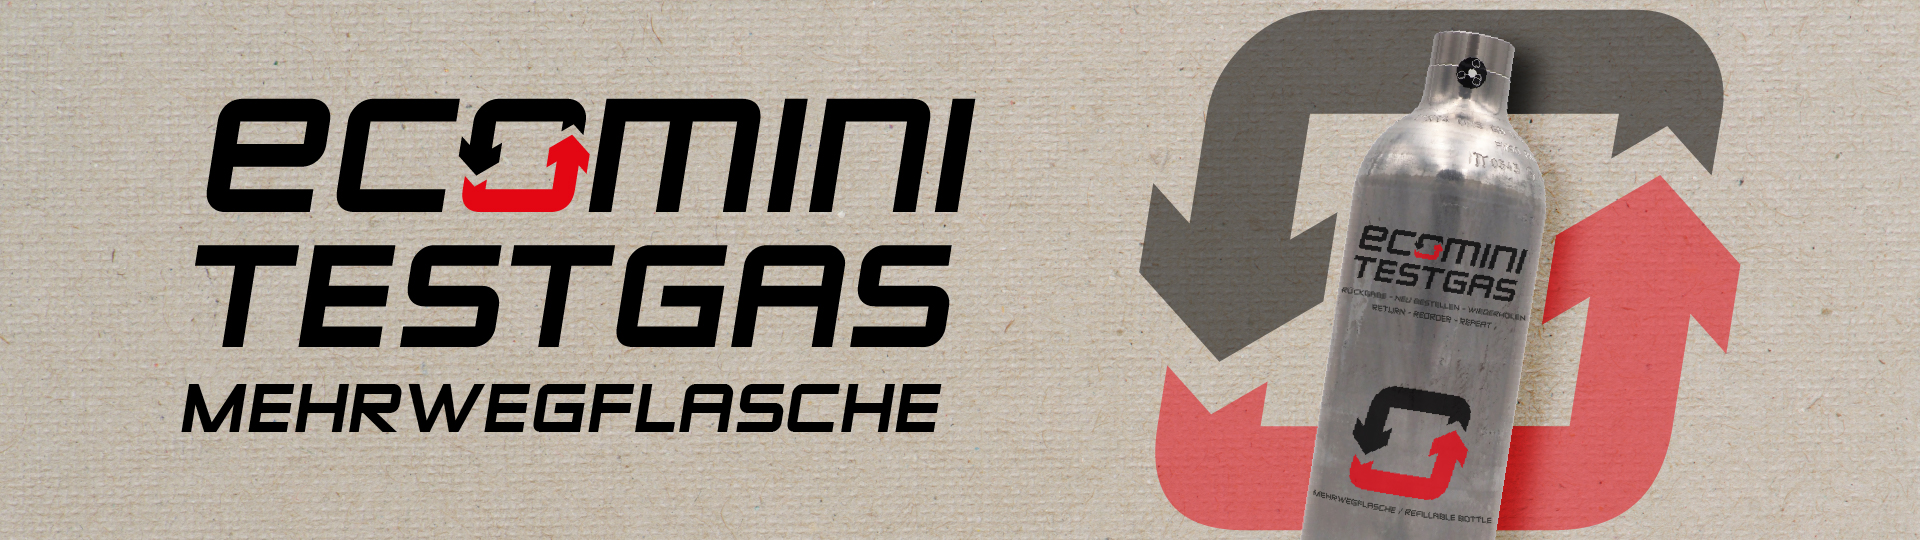 Ecomini Testgas Mehrwegflasche auf Canvas Hintergrund mit eier Eco Mini Testgasflasche und dem Kreislaufwirtschaft Symbol